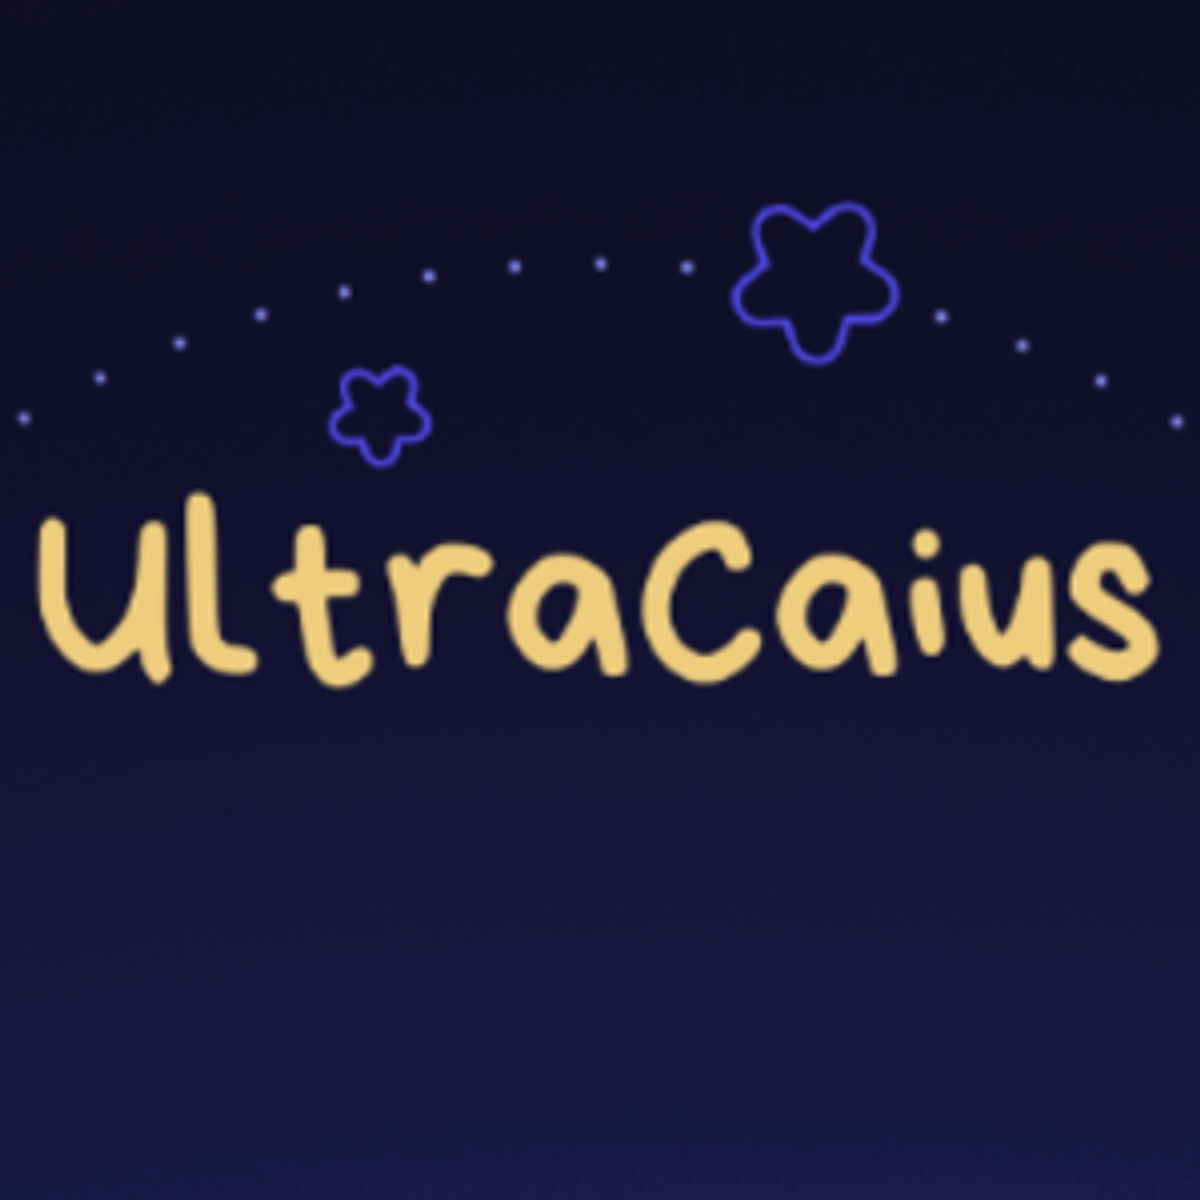 ultra_caius